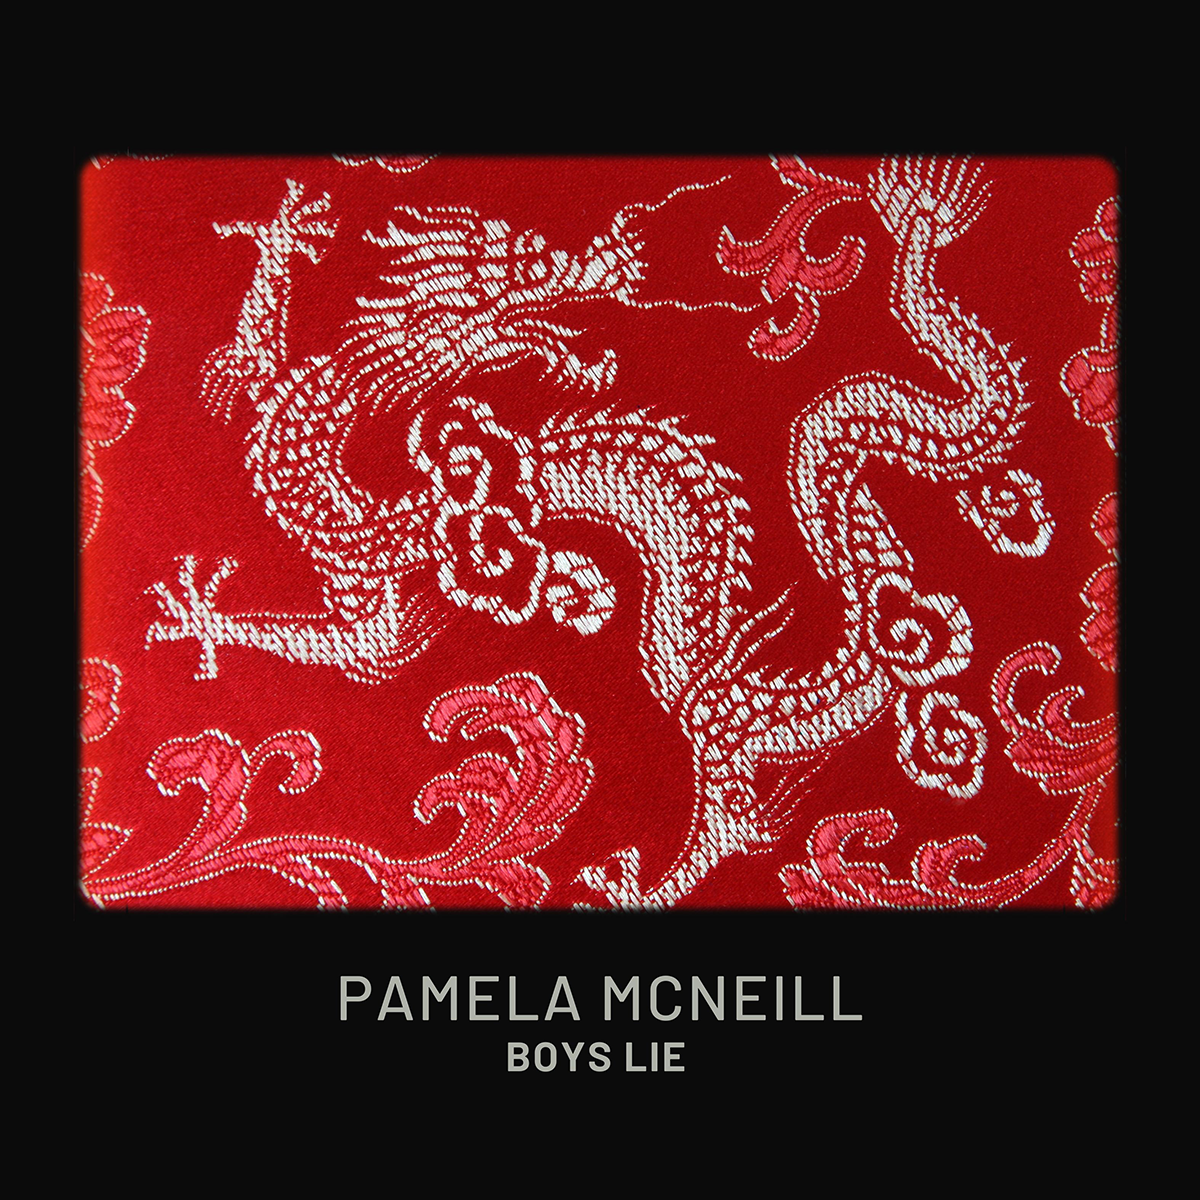 "Boys Lie" by Pamela McNeill